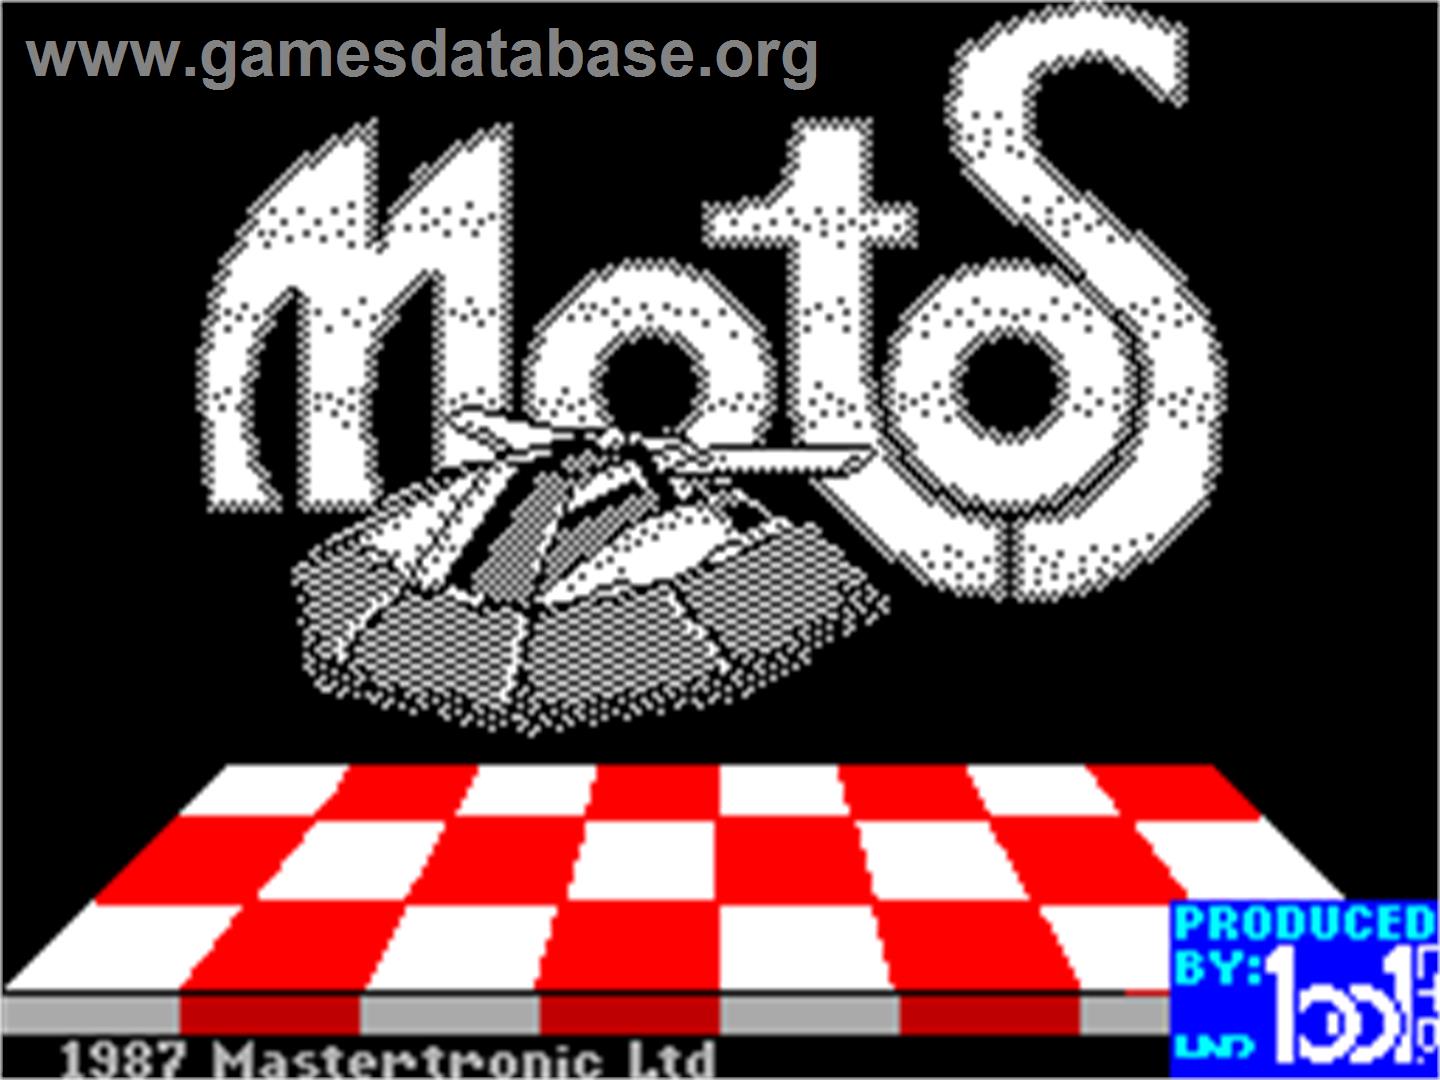 Motos - Sinclair ZX Spectrum - Artwork - Title Screen